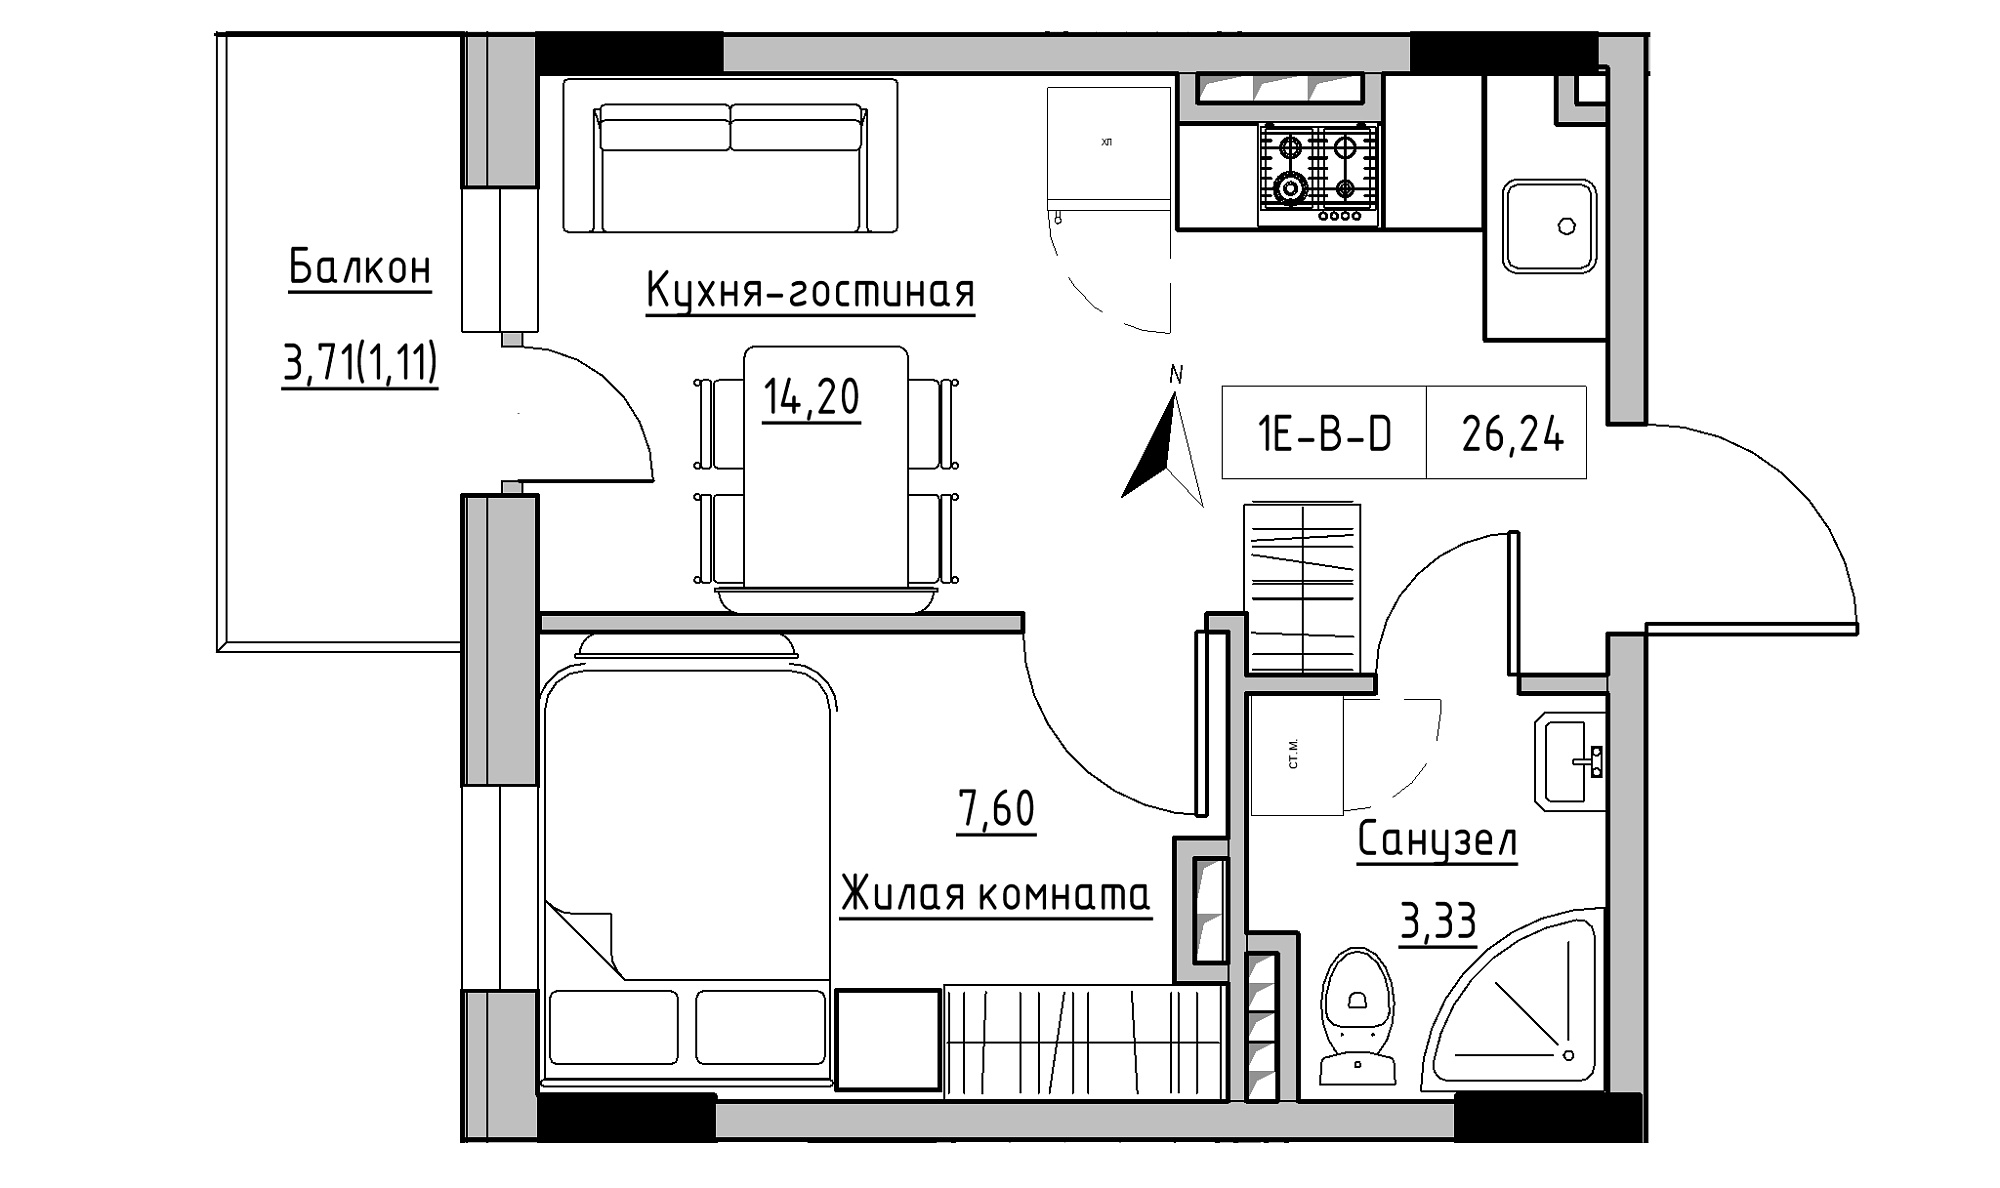 Планировка 1-к квартира площей 26.24м2, KS-025-04/0005.